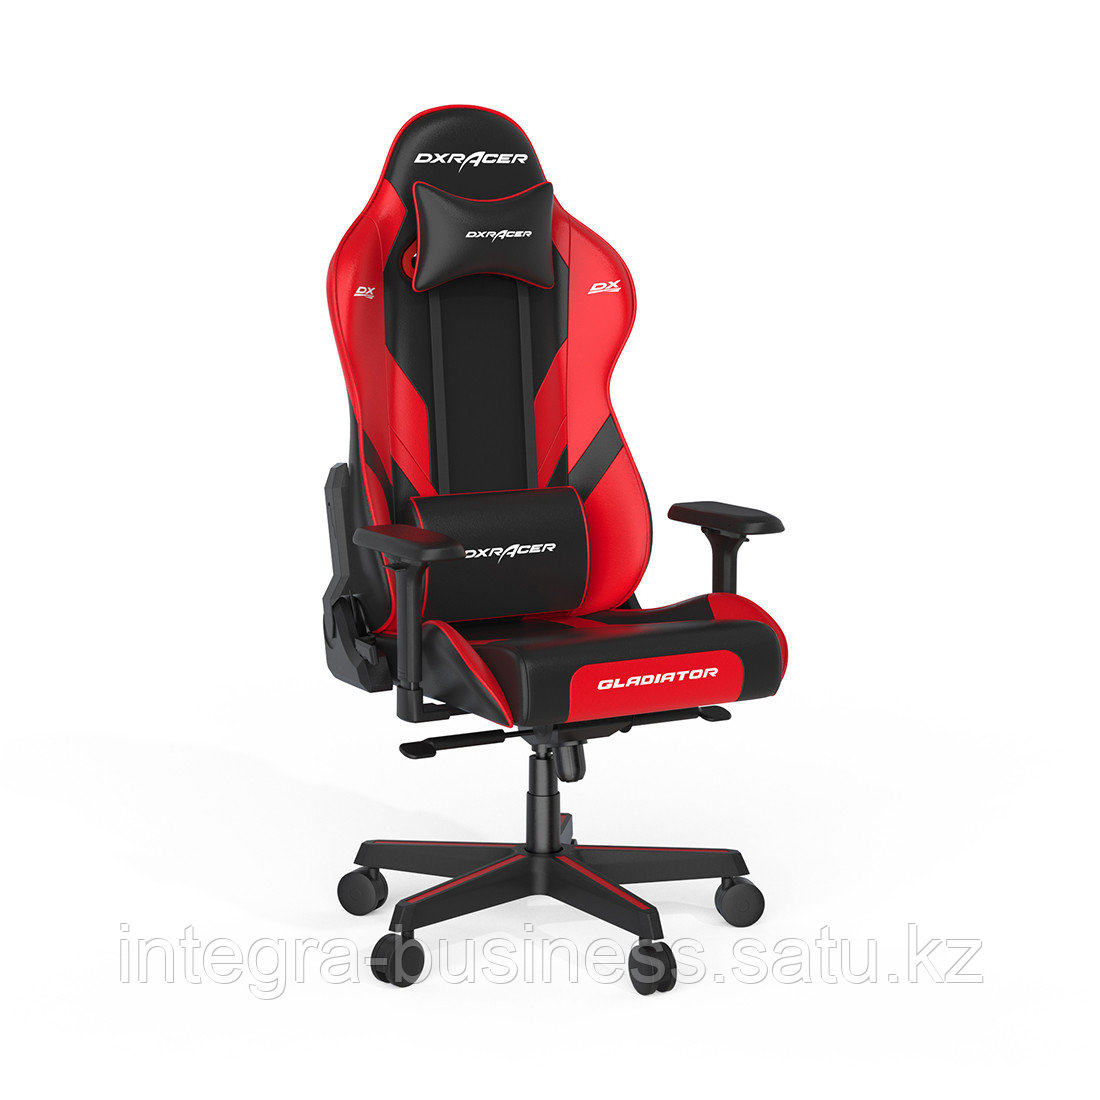 Игровое компьютерное кресло DX Racer GC/G001/NR, фото 1